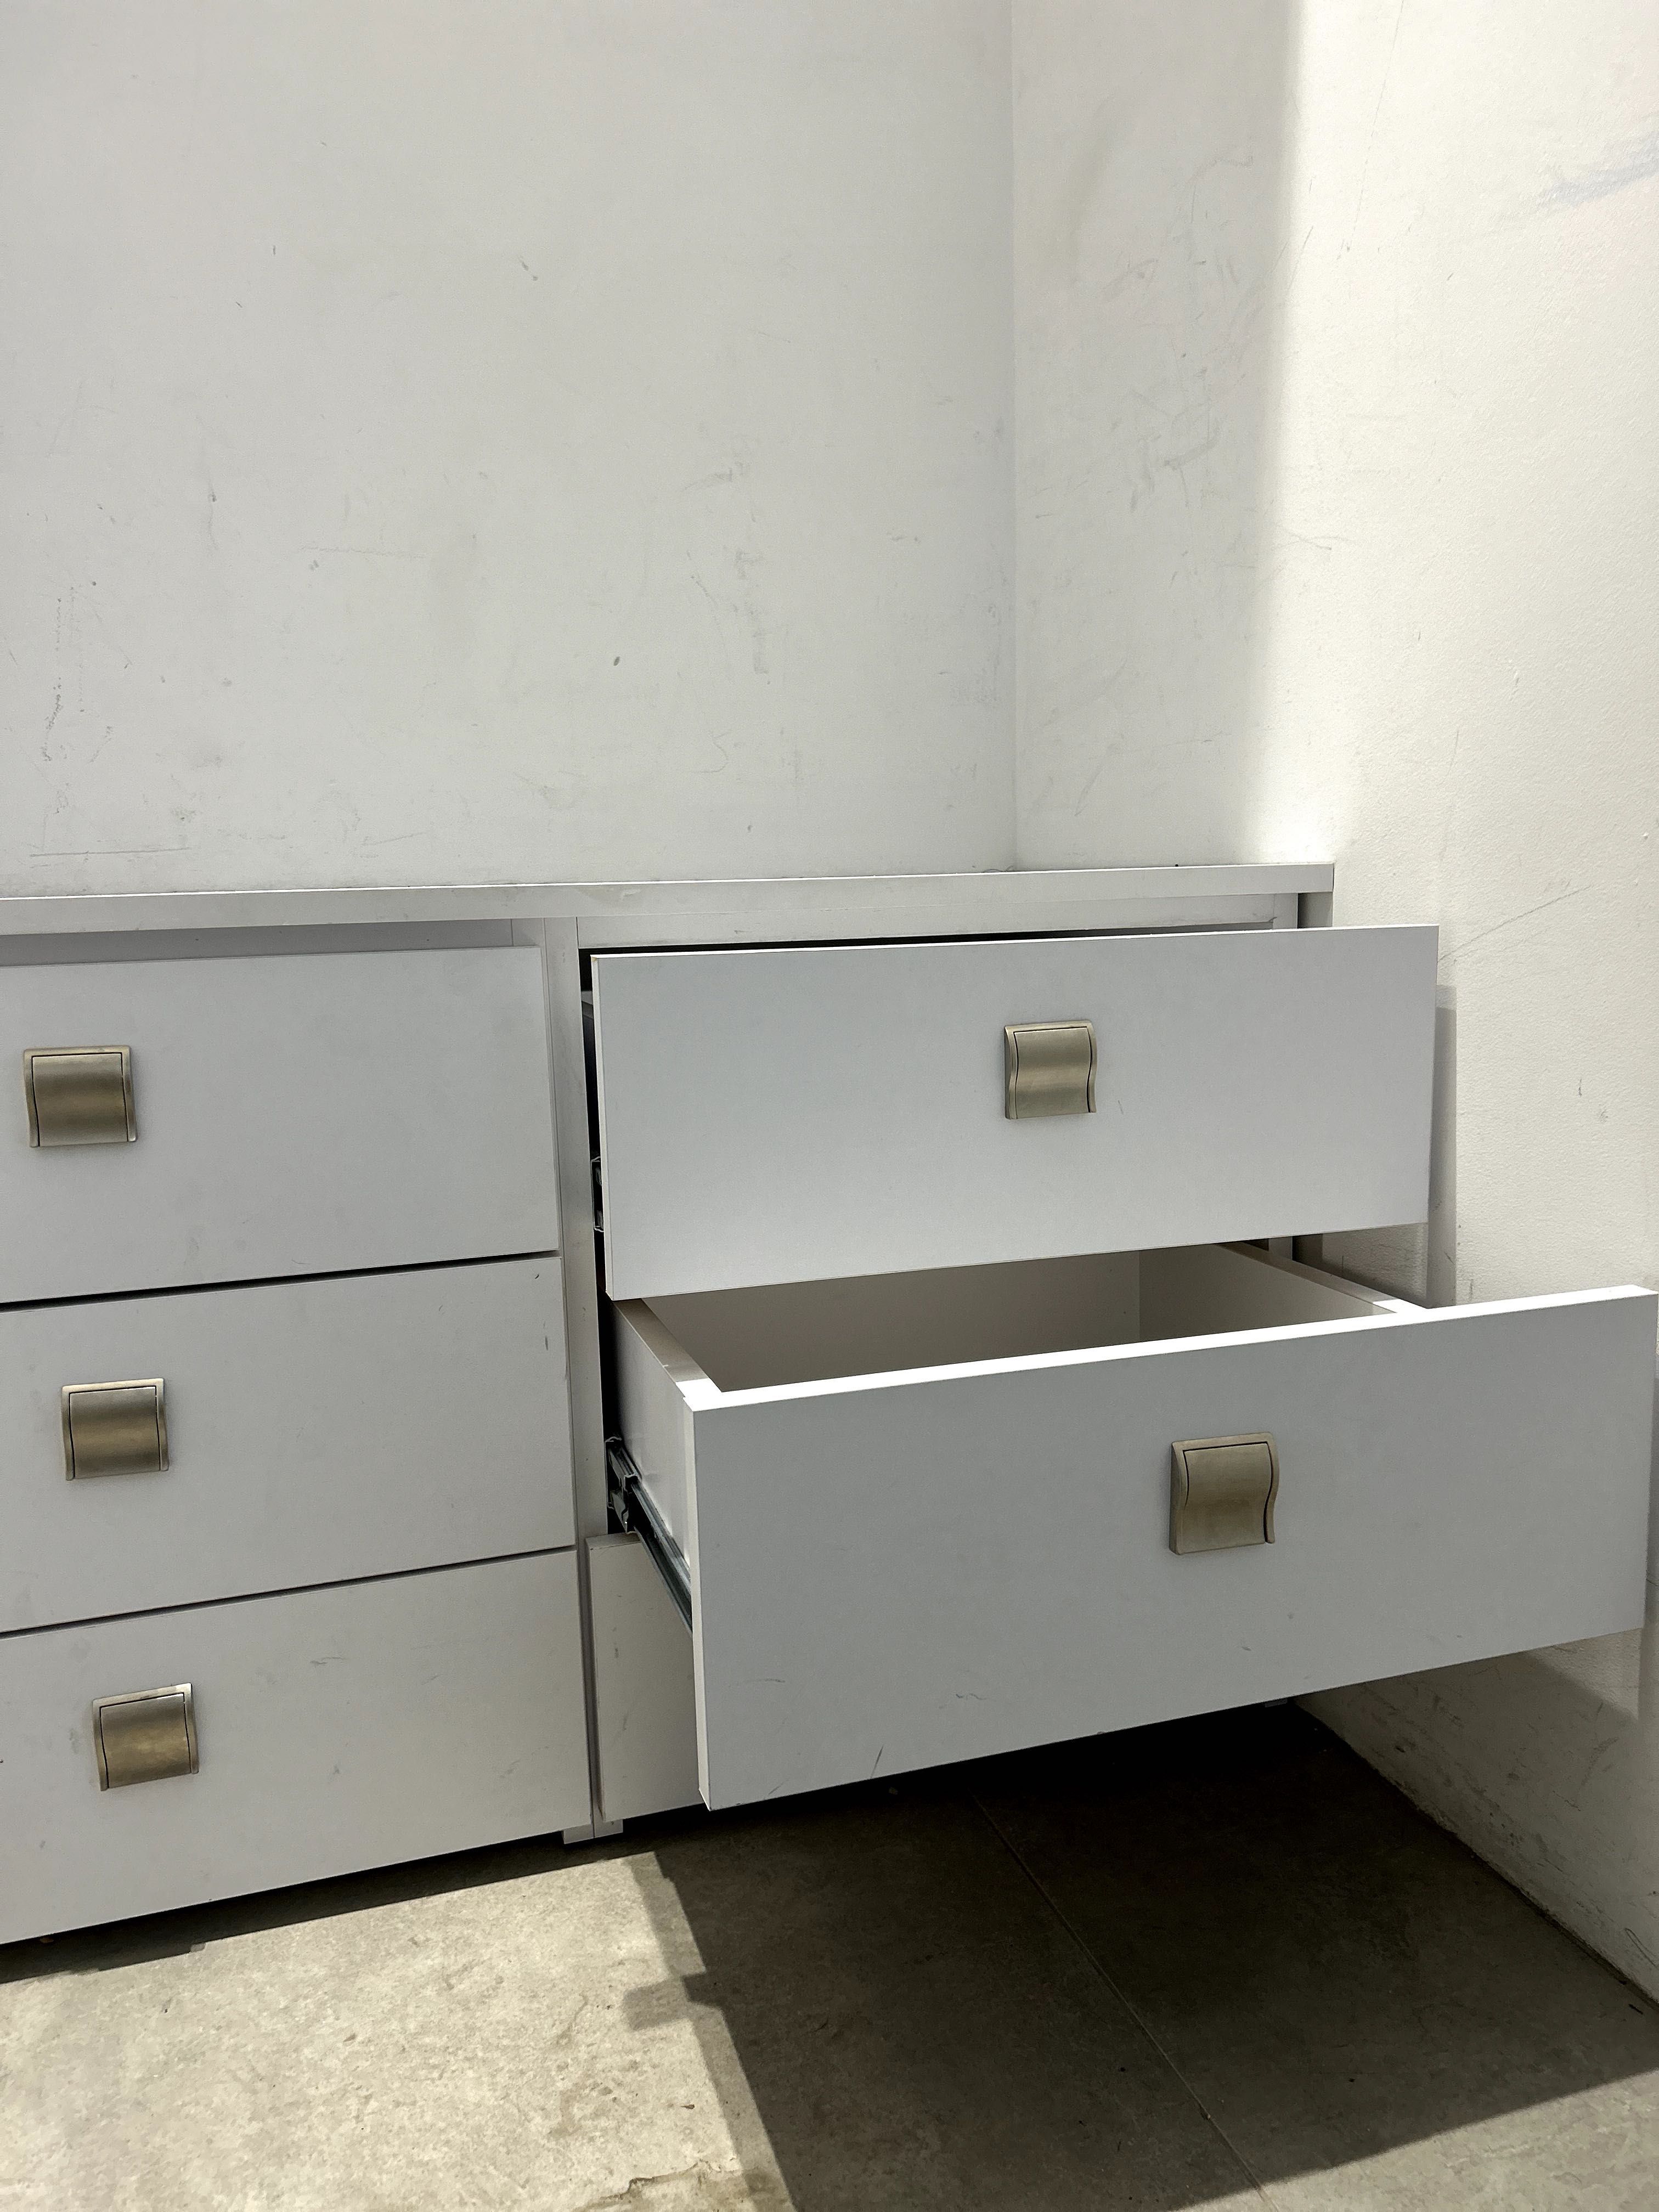 Komoda biała - 6 szuflad (do zabudowy lub wolno stojąca)